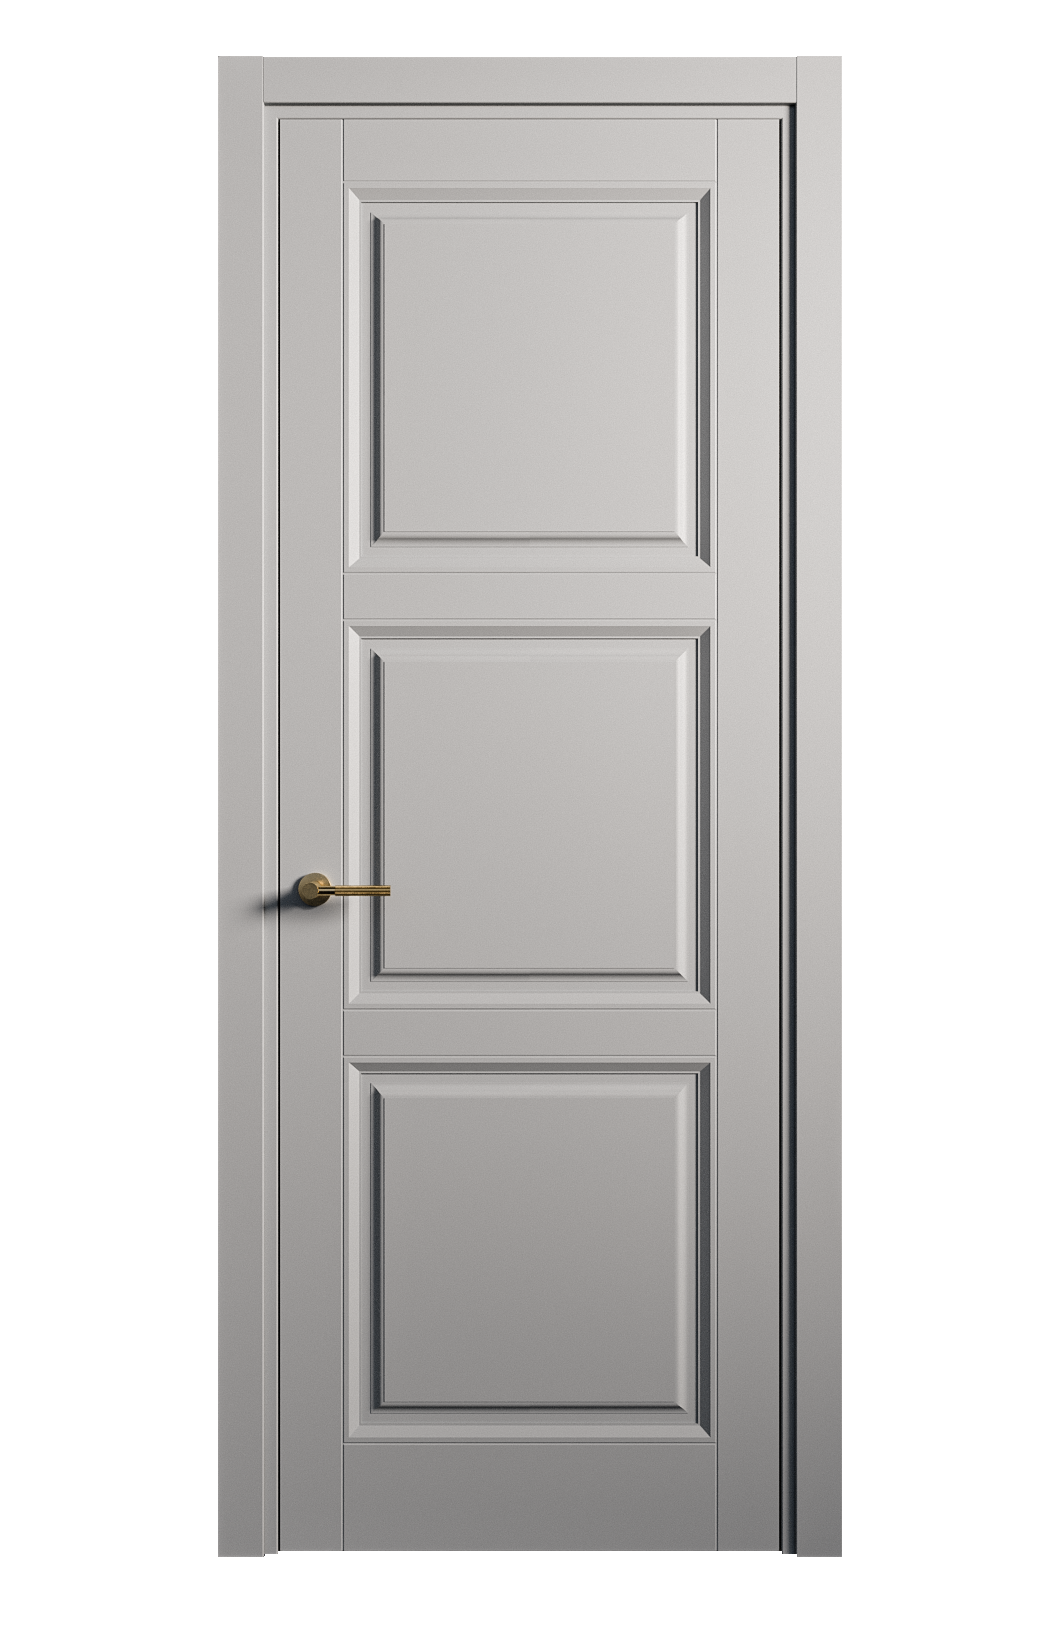 Межкомнатная дверь Venezia-3 глухая эмаль ral 7040 25754